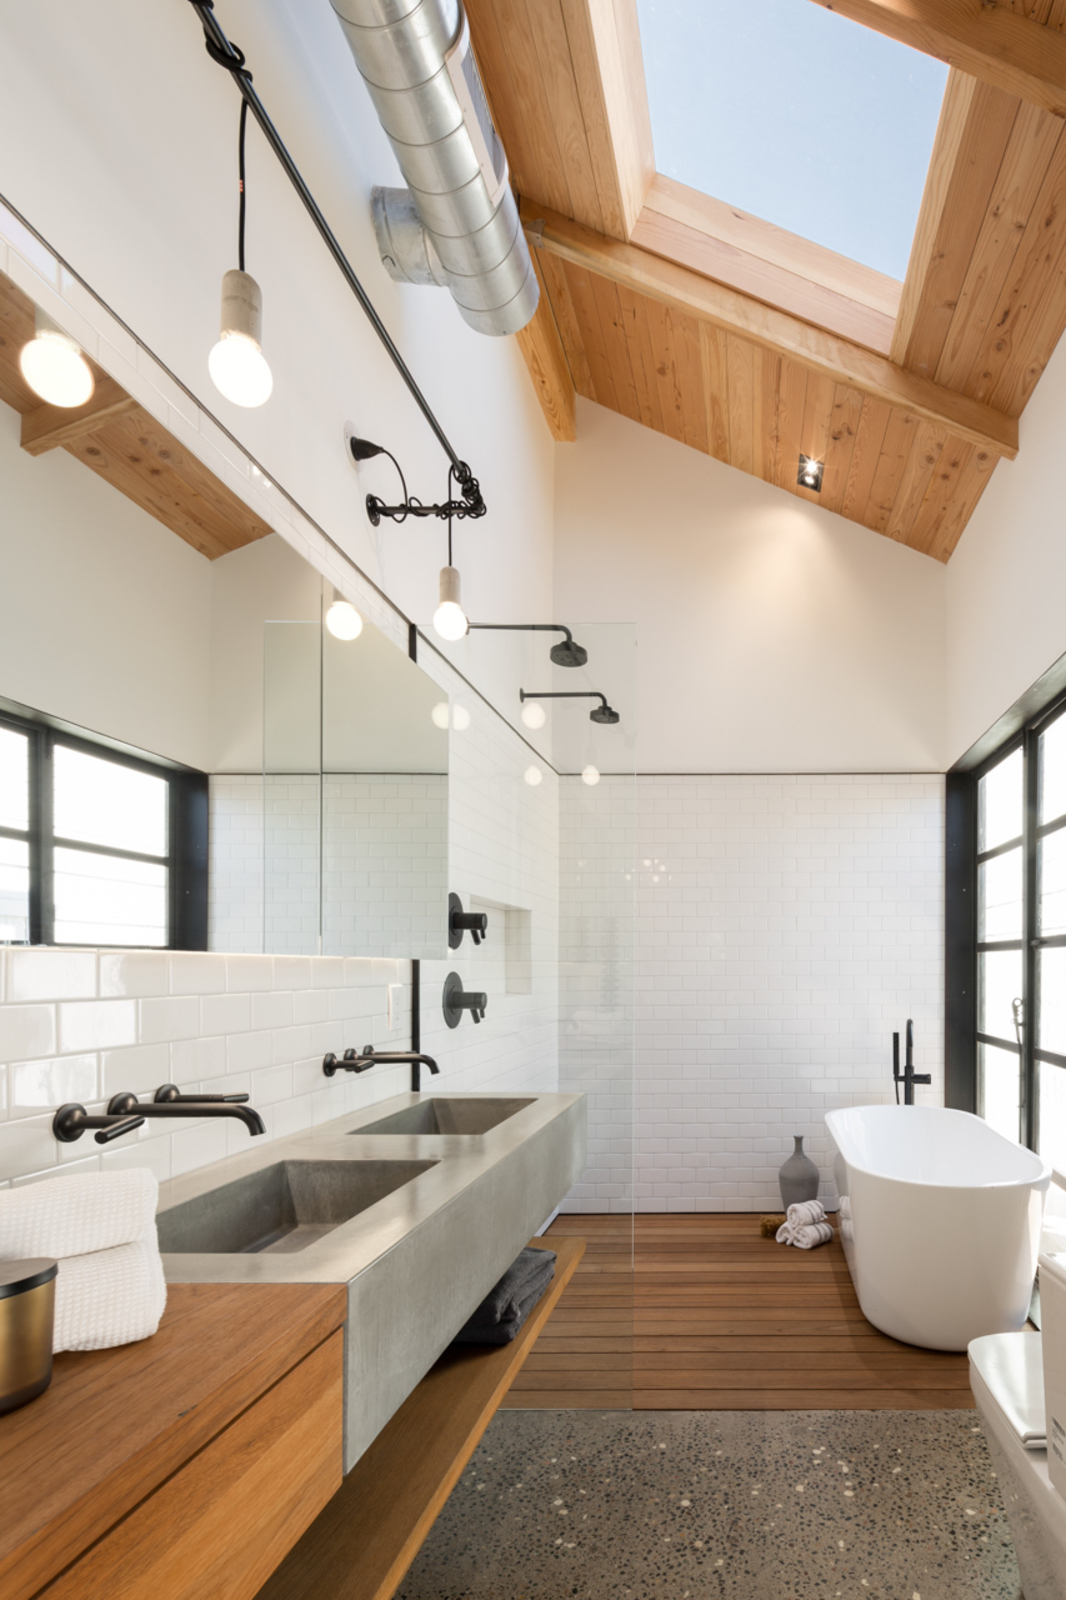 12 Best Bathroom Wooden Floor Ideas Images Bathroom Design Wood